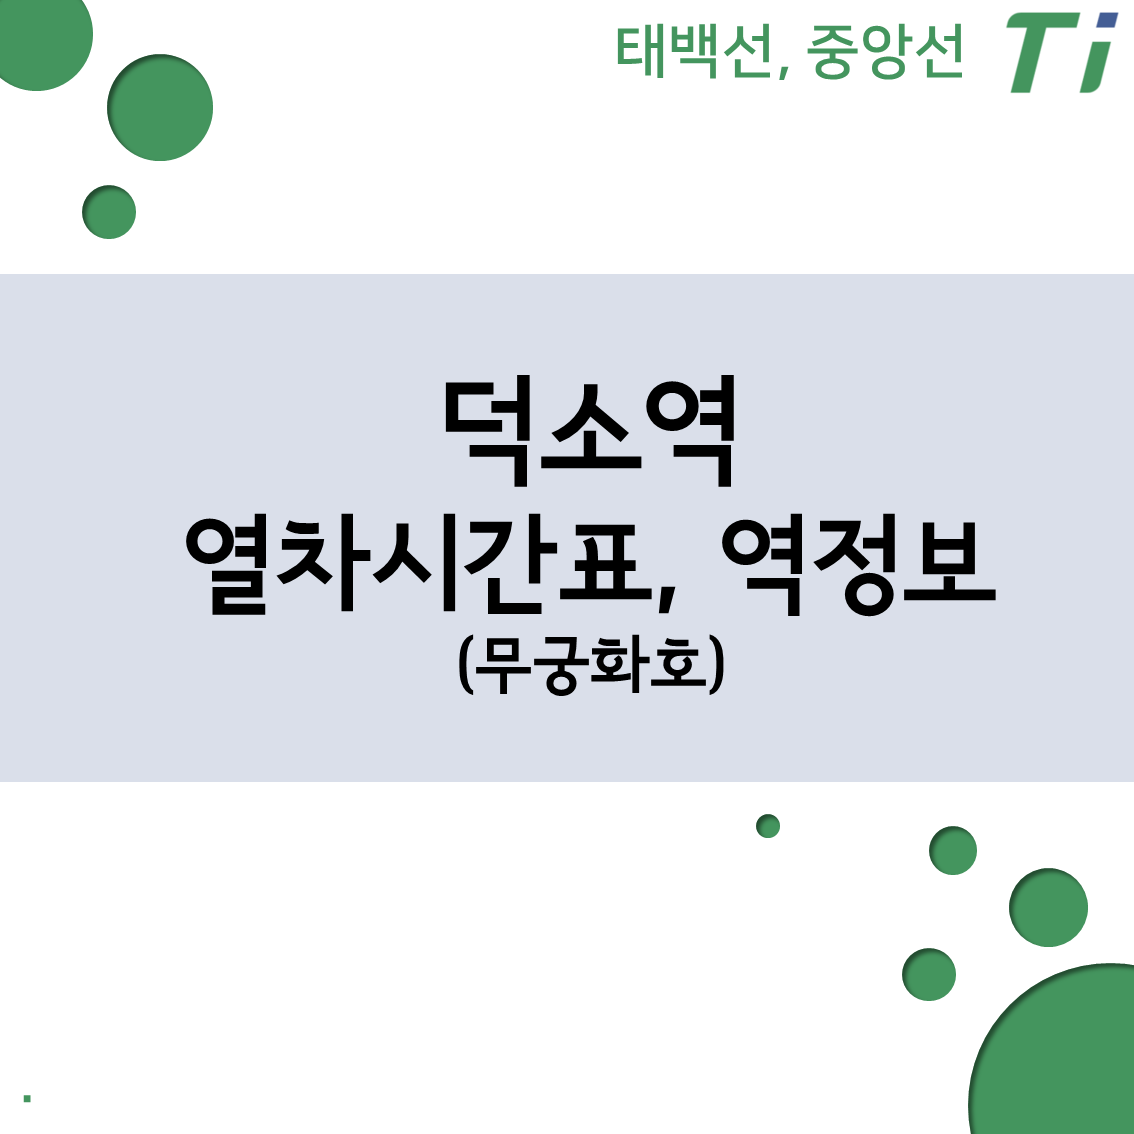 덕소역 열차시간표, 요금 (중앙선 Ktx, Itx-새마을, 무궁화호)